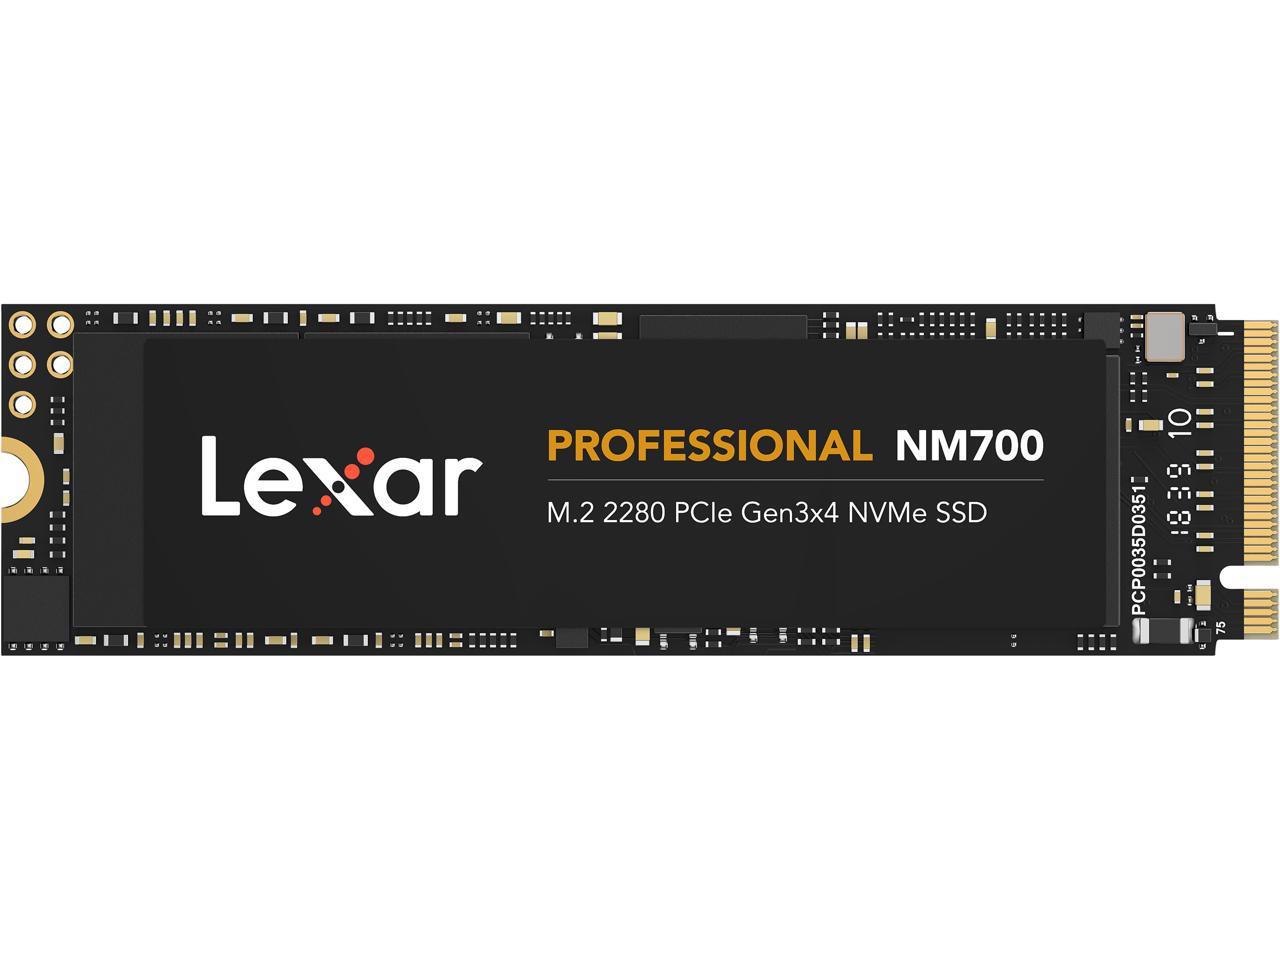 Lexar Professional NM700 M.2 2280 1TB PCIe Gen3 X4 NVMe 3D TLC Internal Solid State Drive (SSD) Lnm700-1Trbna